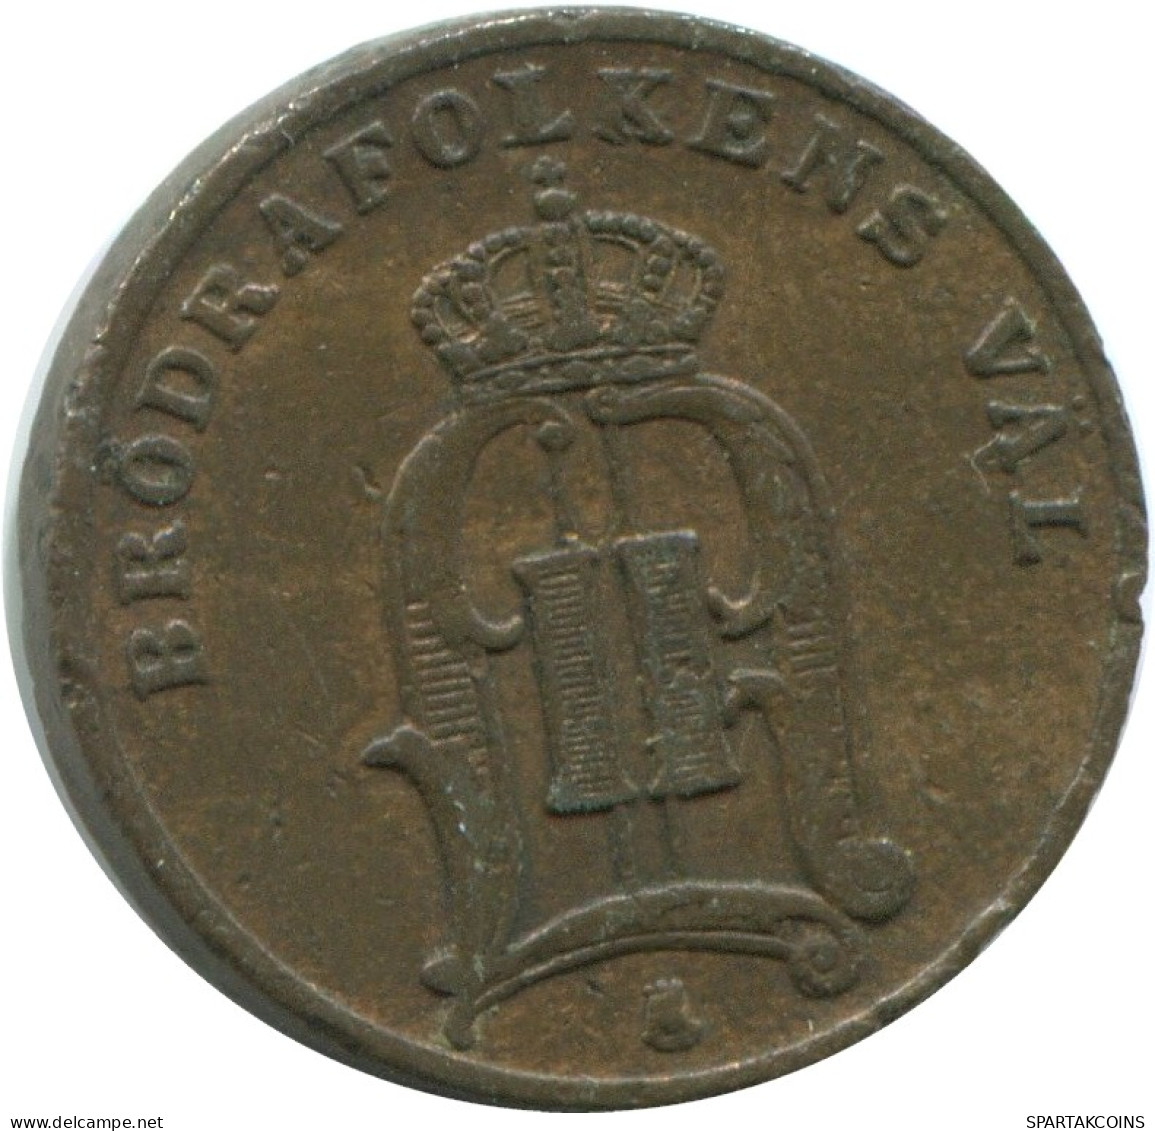 1 ORE 1885 SCHWEDEN SWEDEN Münze #AD387.2.D.A - Schweden